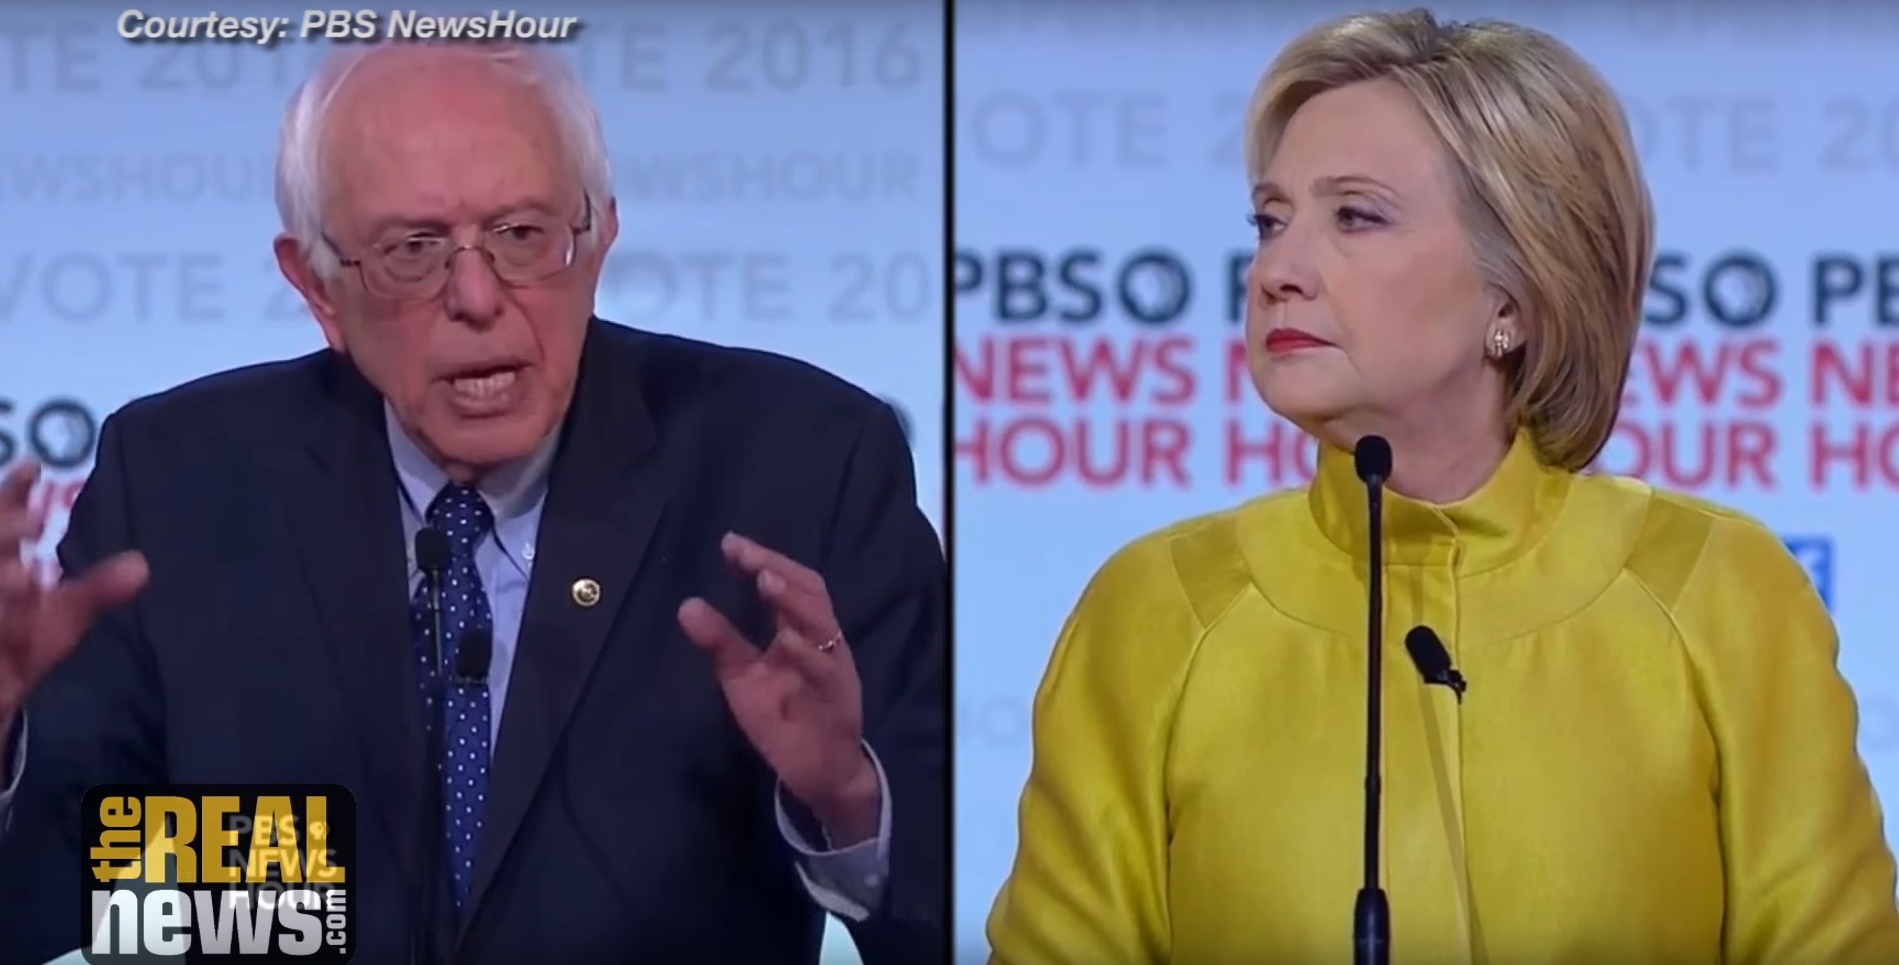 Democratic Debate: Sanders Attacks Clinton/Kissinger Vision for Perpetual War